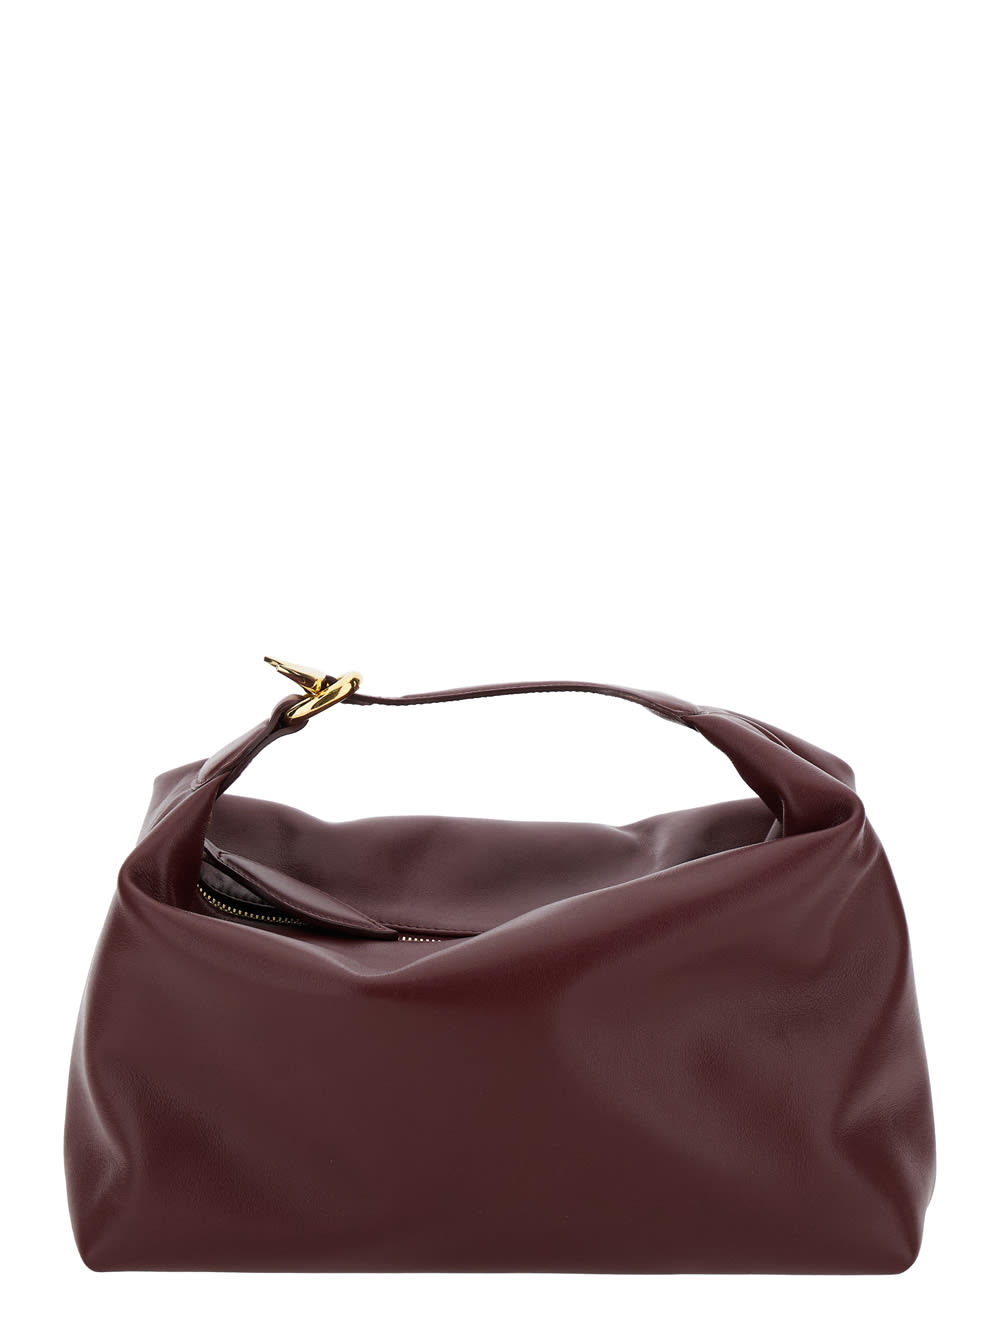 pillow Pouch Bordeaux Handbag In Leather Woman